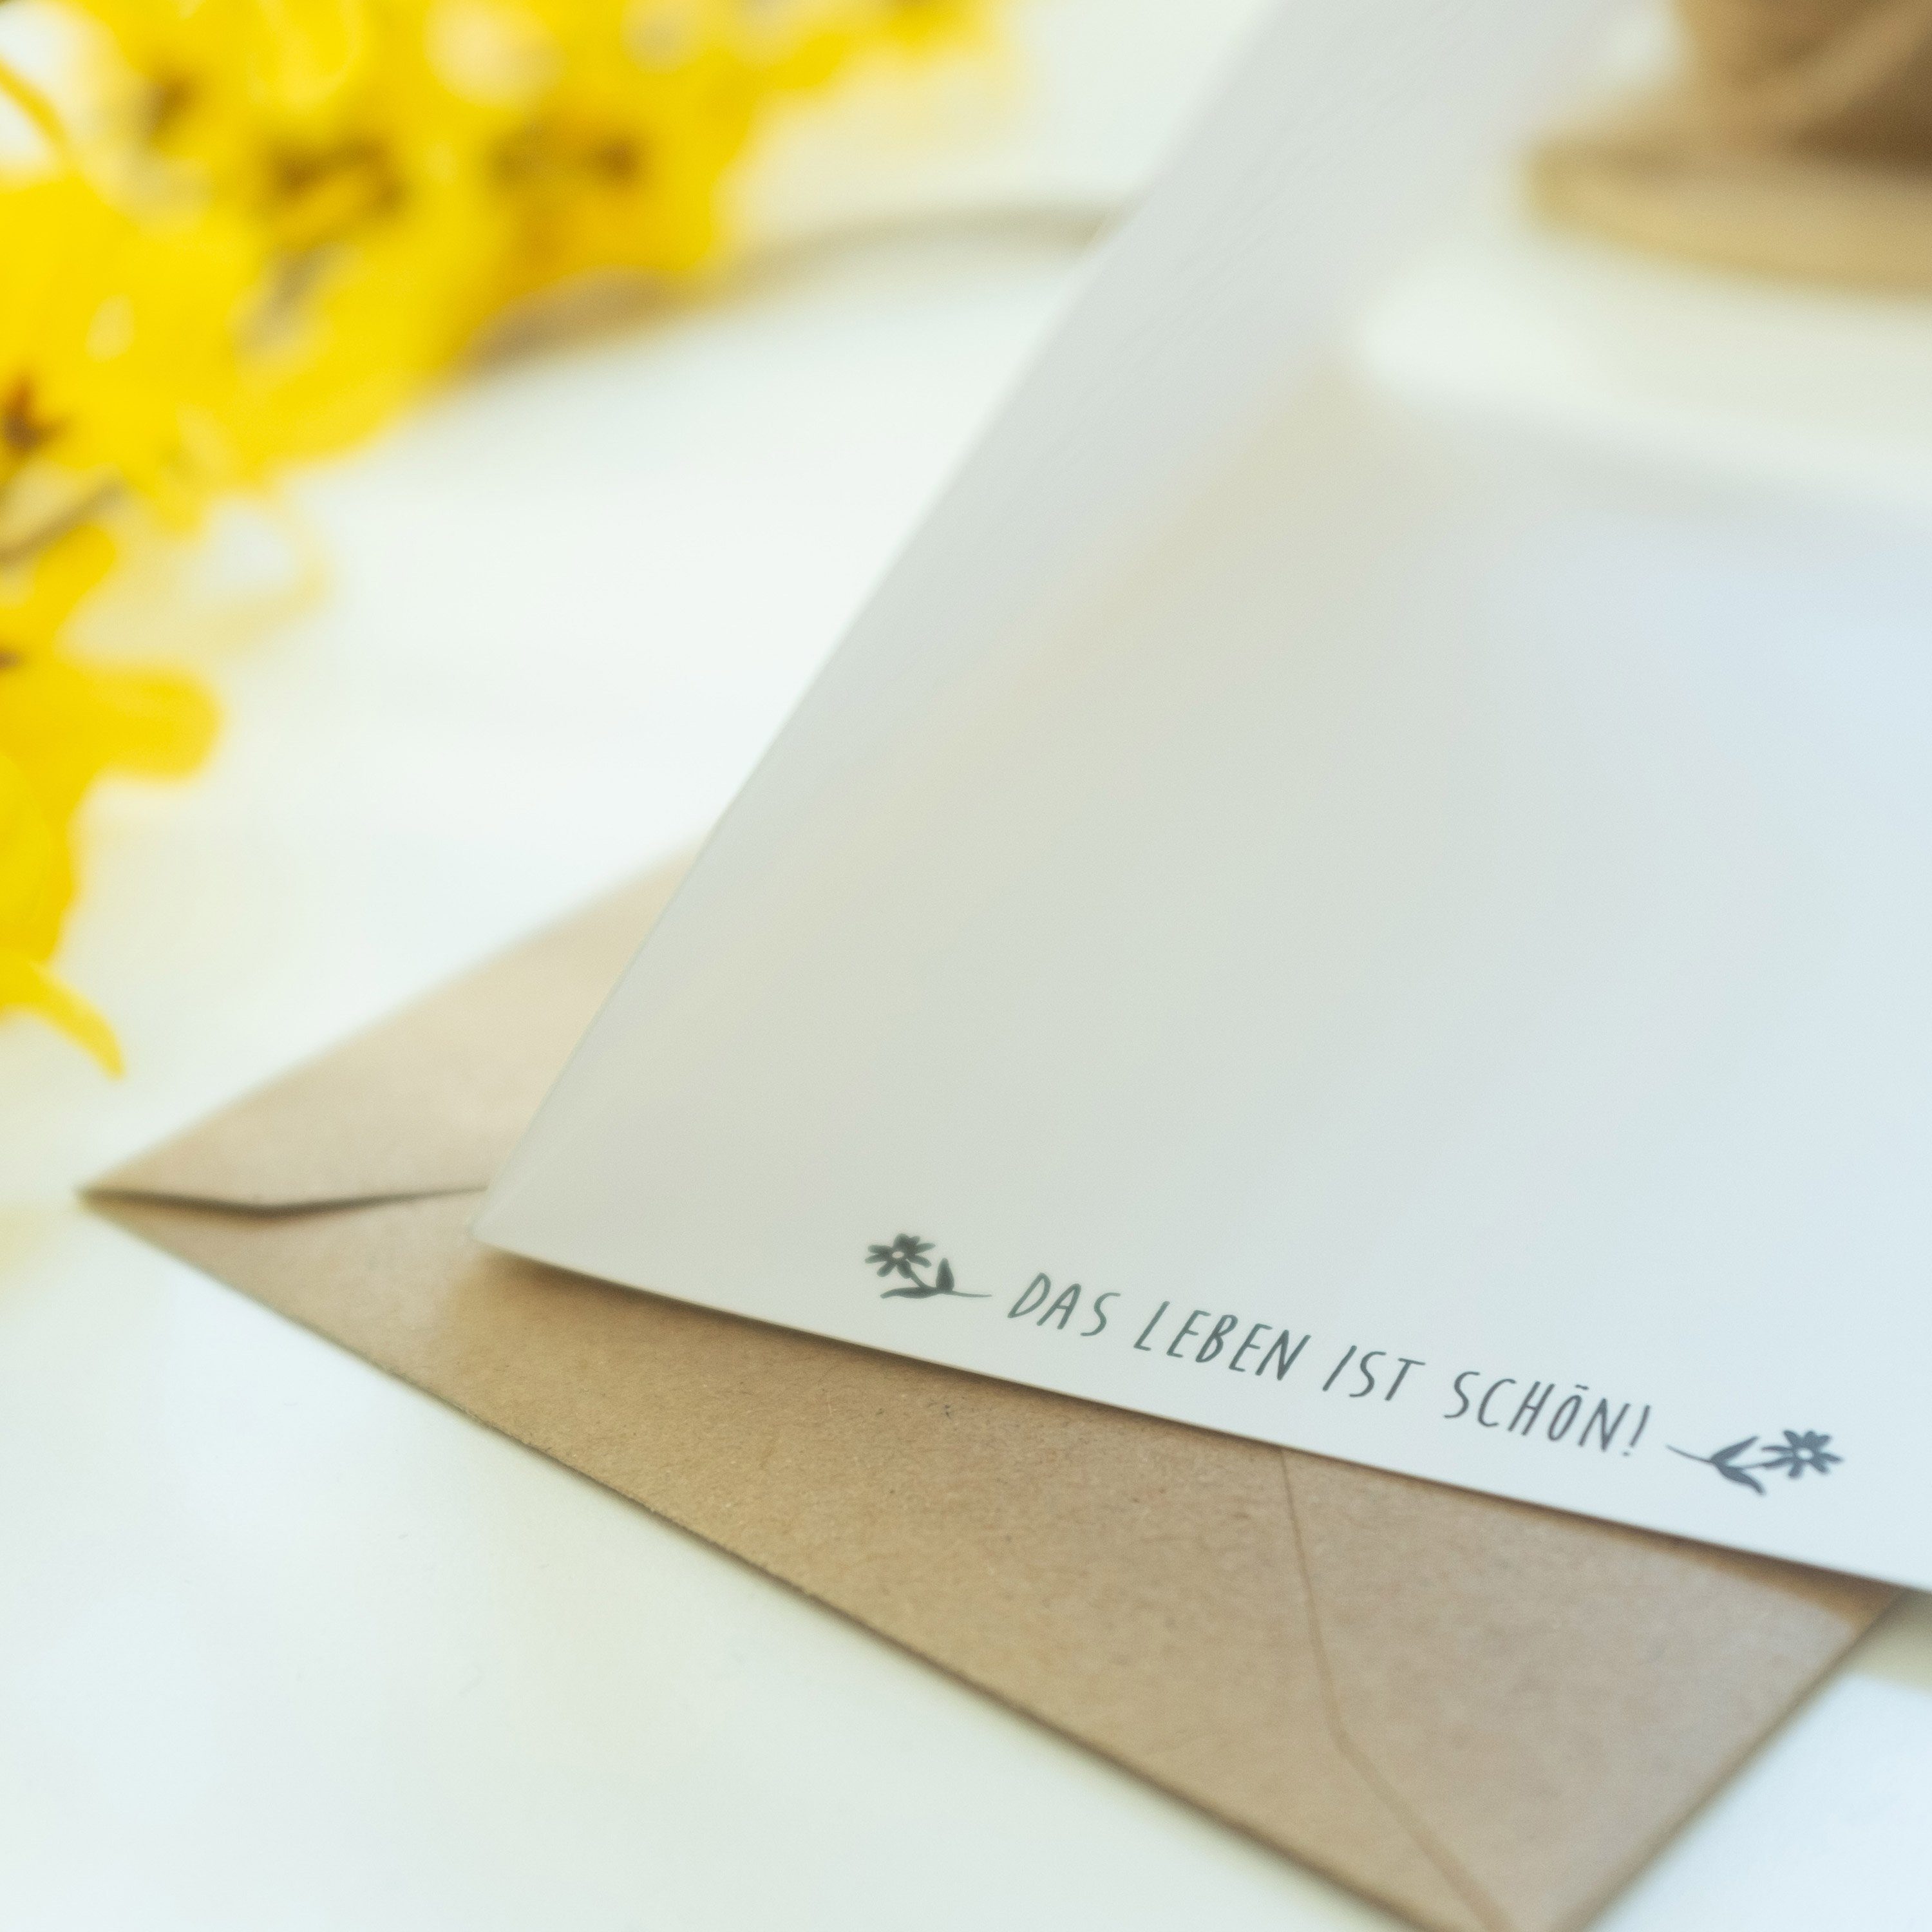 Mr. & Mrs. Panda Blumenmaedchen - Klappkar Geschenk, - Einladungskarte, Stinktier Grußkarte Weiß